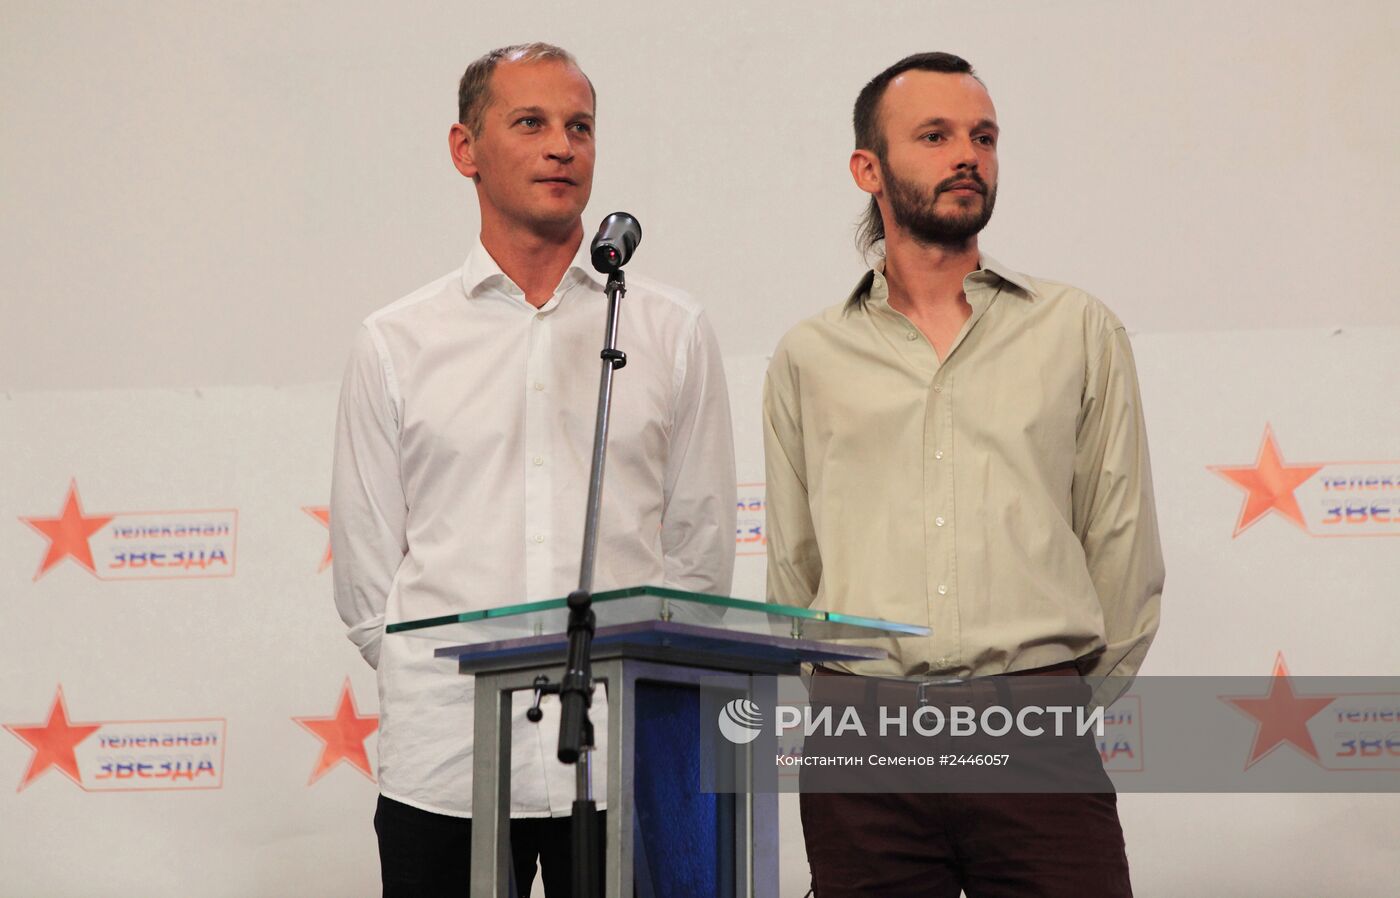 Пресс-конференция освобожденных журналистов телеканала "Звезда"